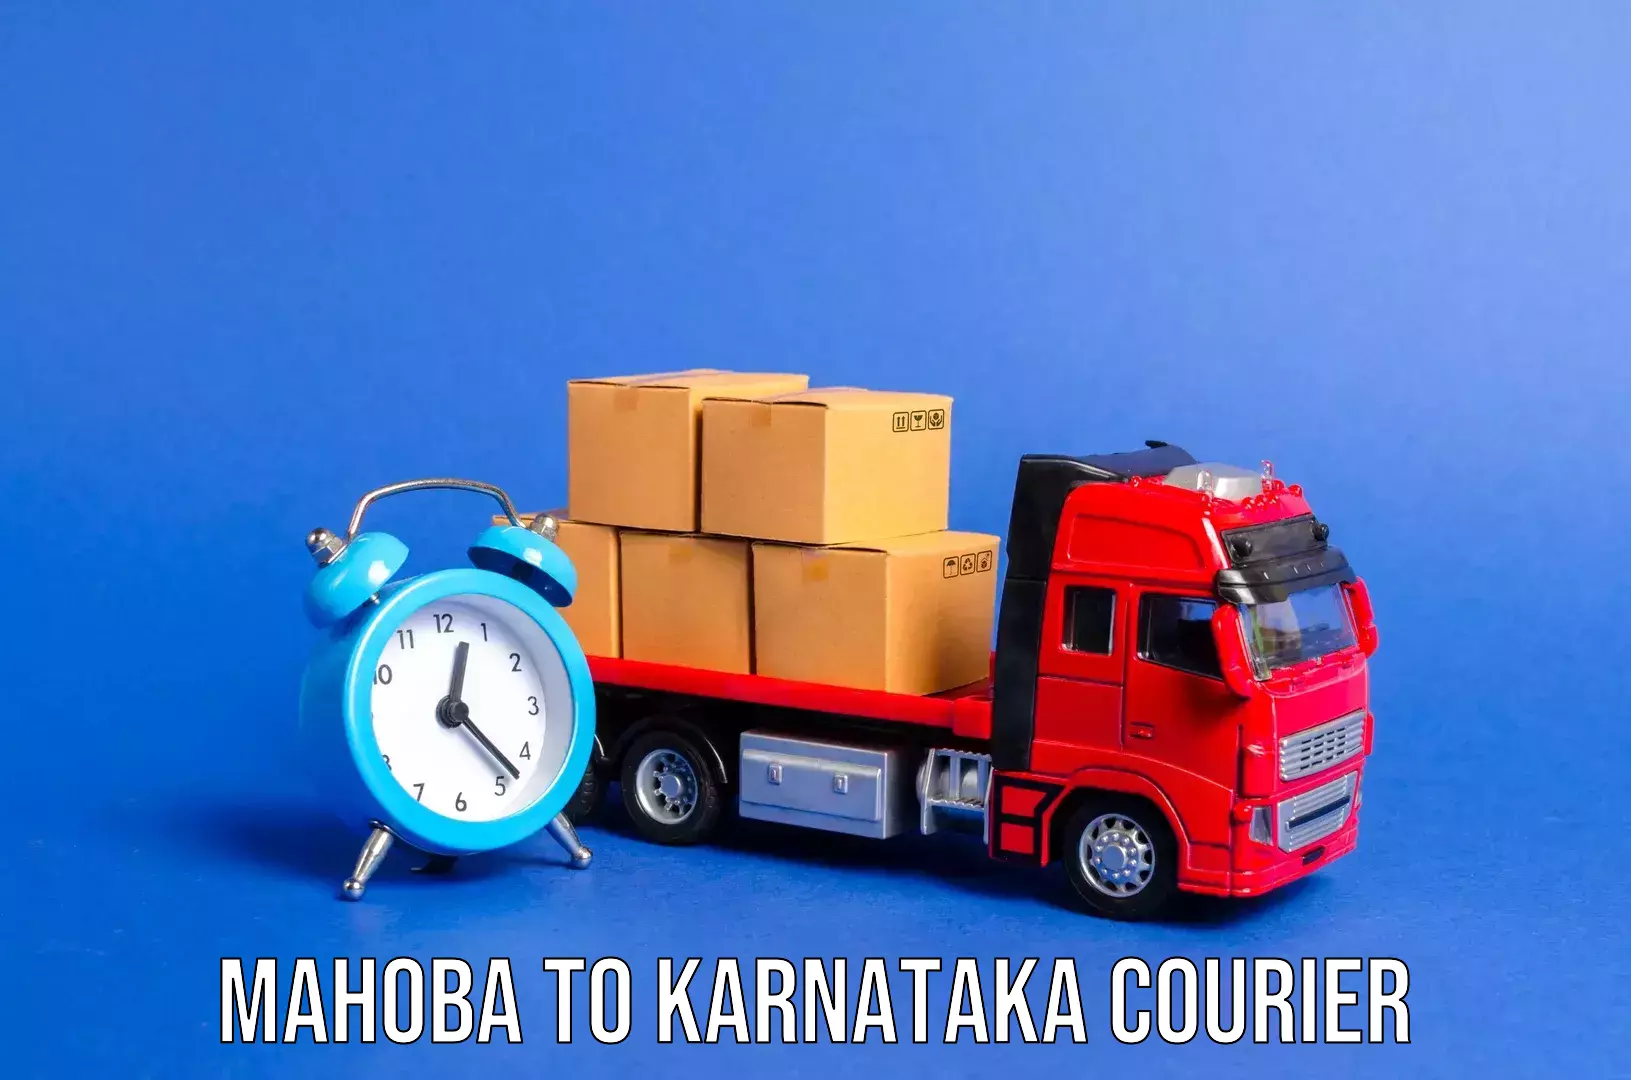 Light baggage courier Mahoba to Karnataka